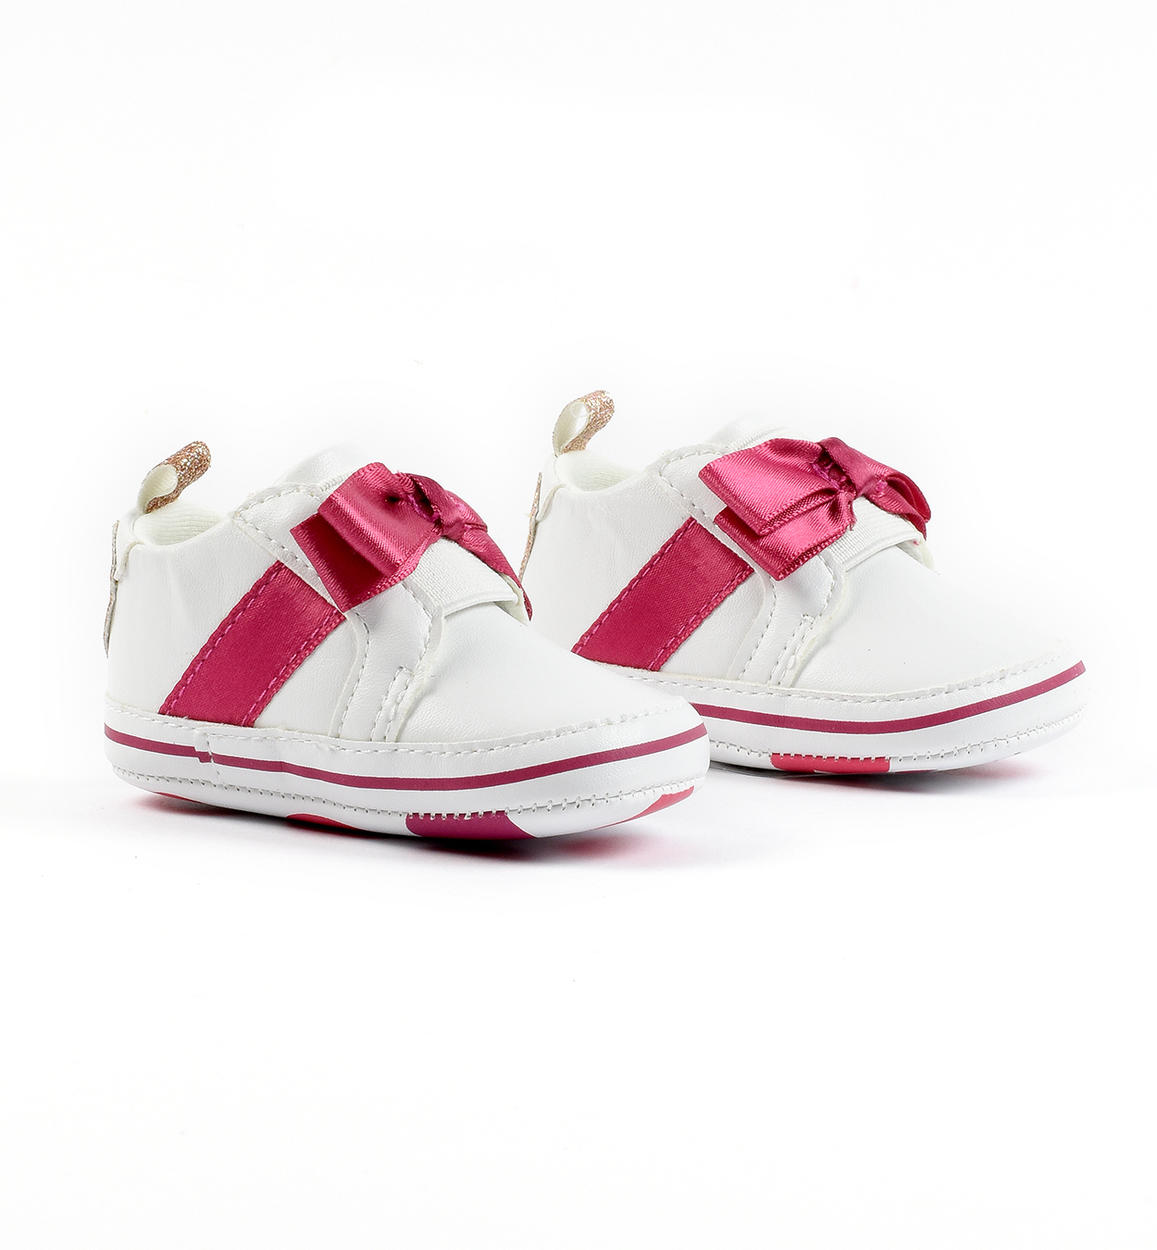 Scarpine neonata modello sneakers con cuore glitter BIANCO iDO